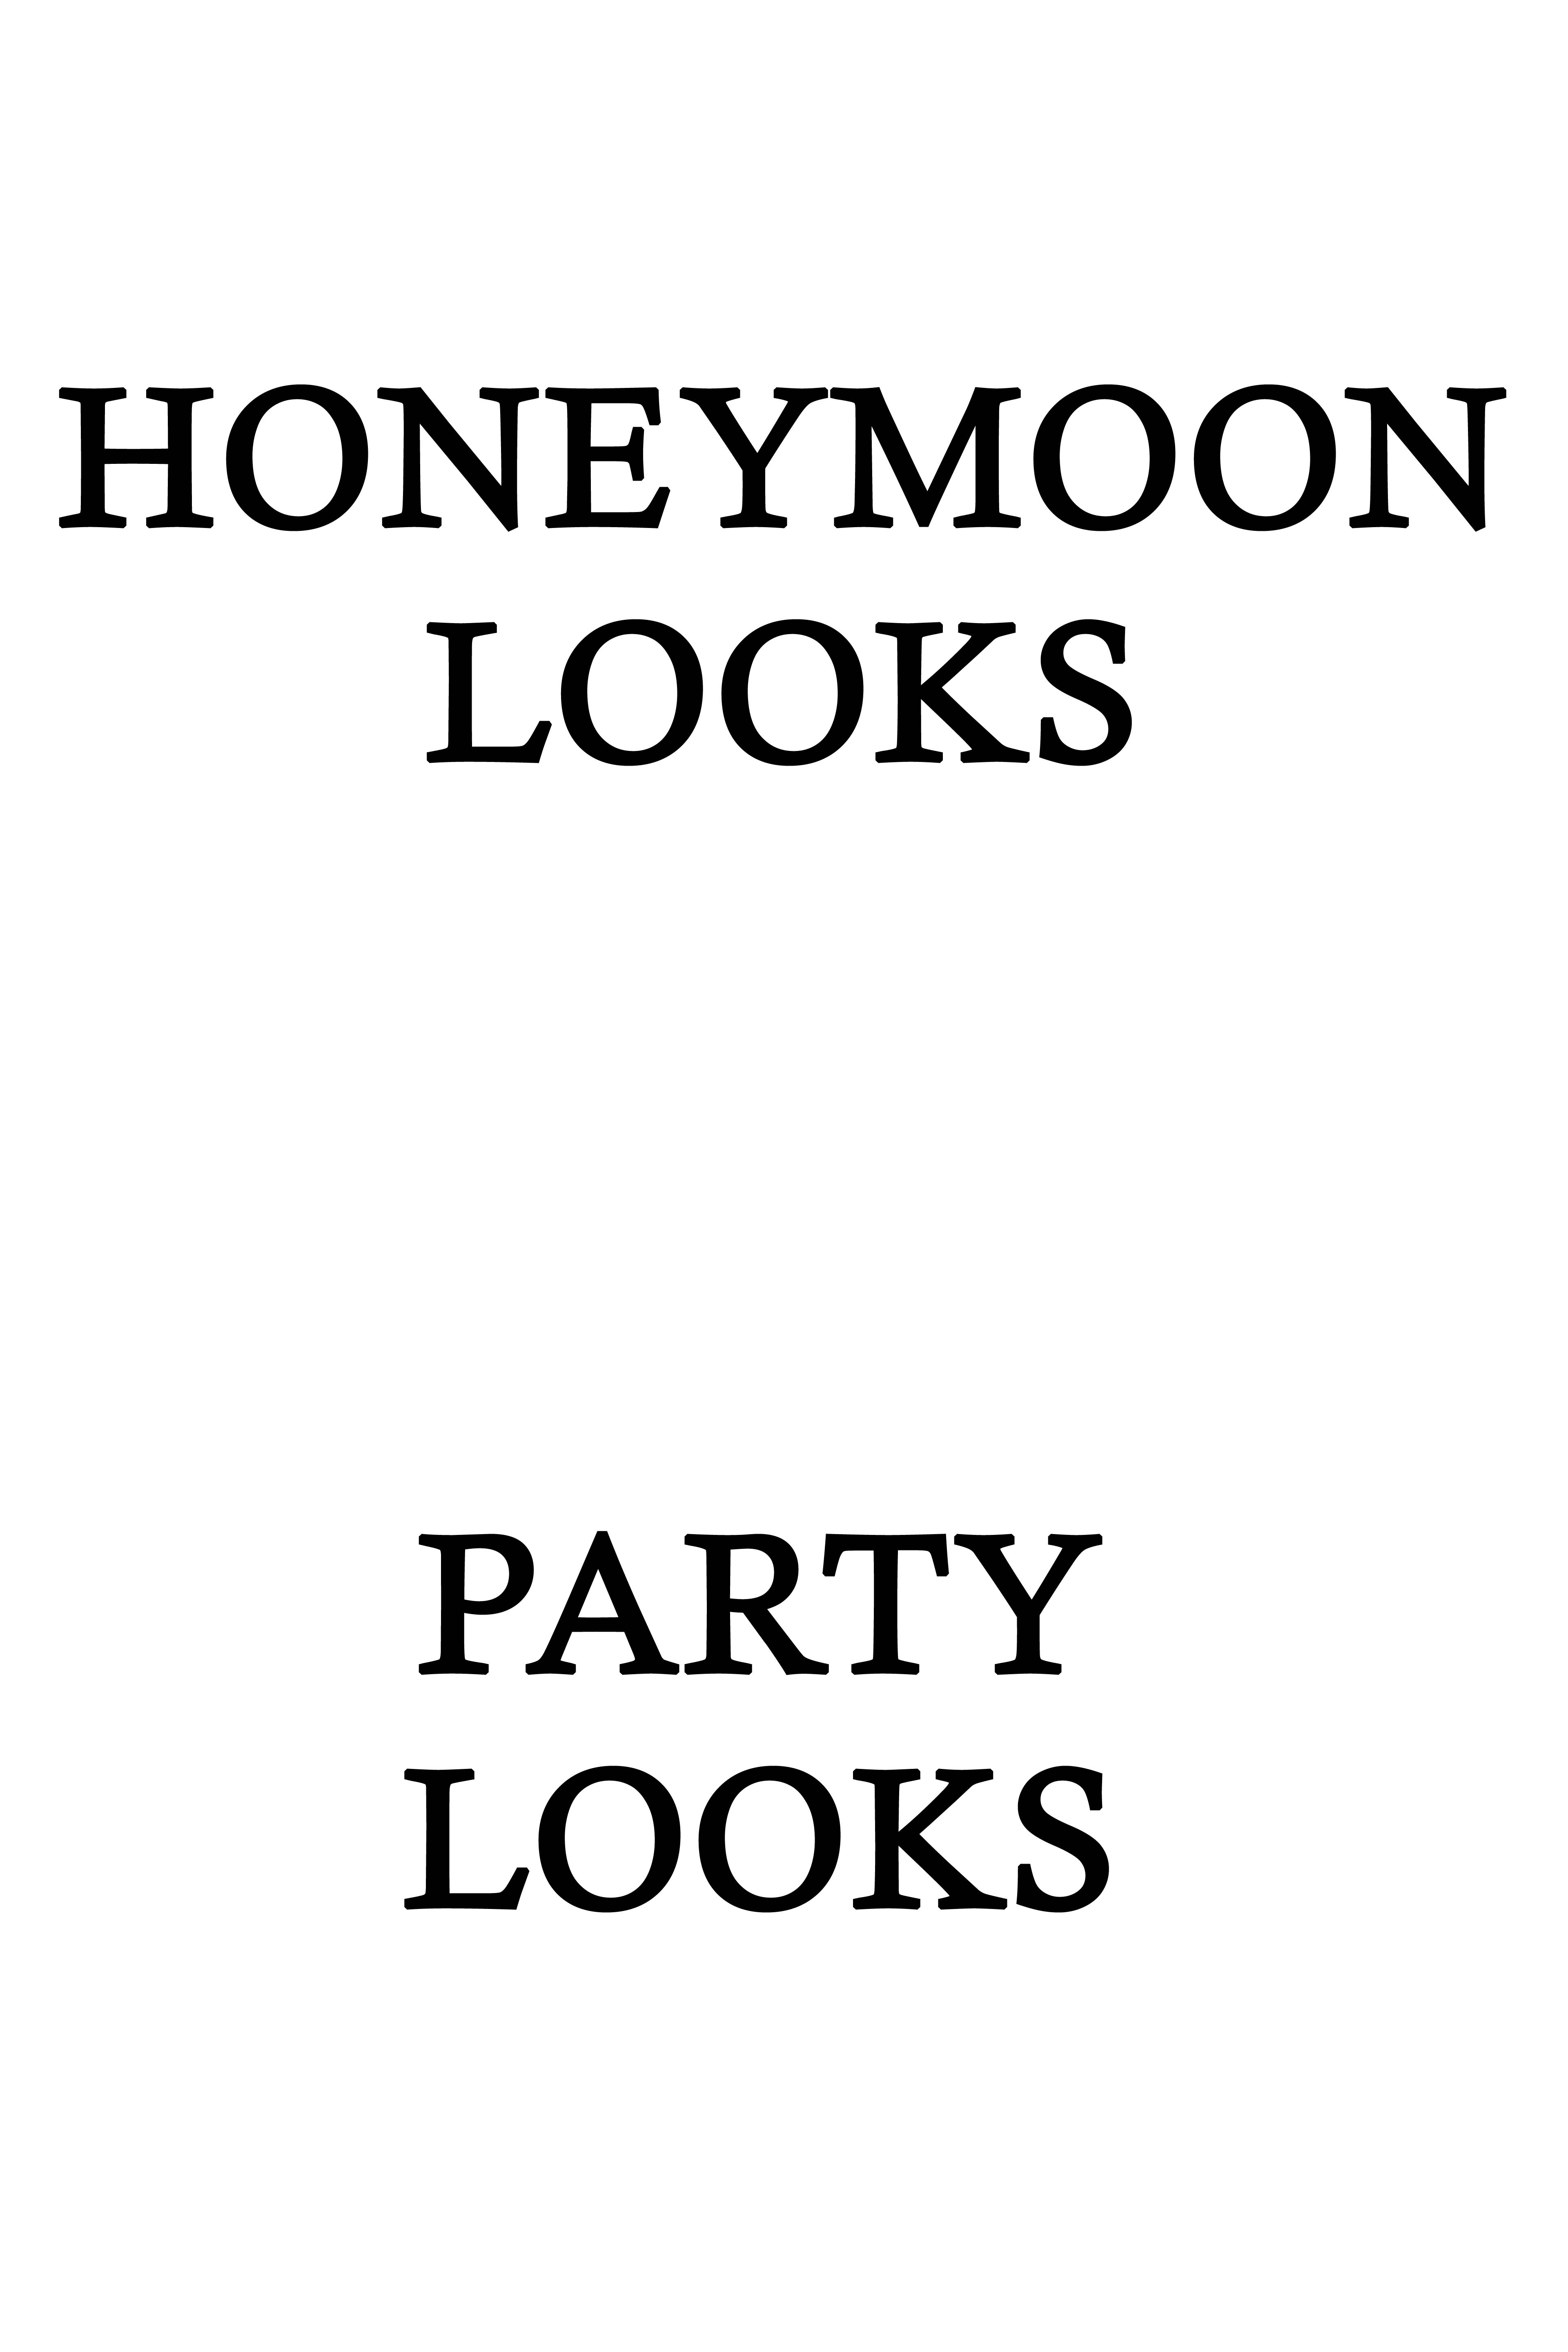 HoneyMoon Party Looks